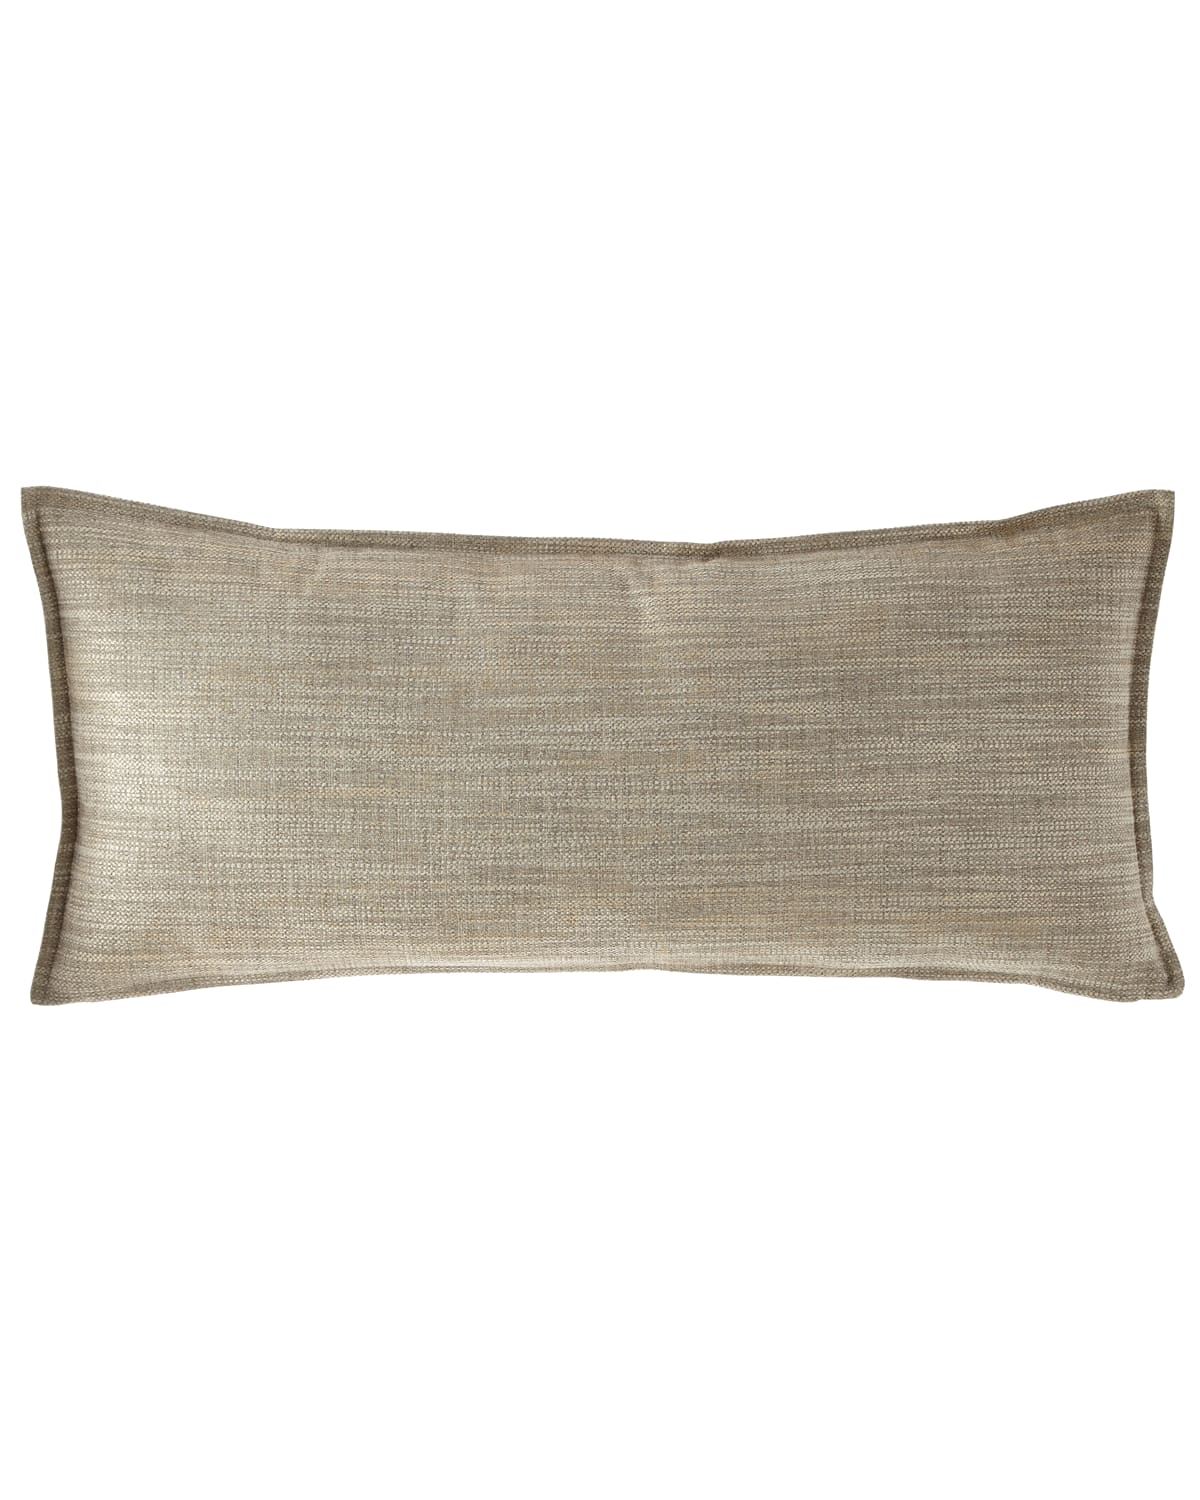 Image Fino Lino Linen & Lace Inessa Manor Decorative Pillow